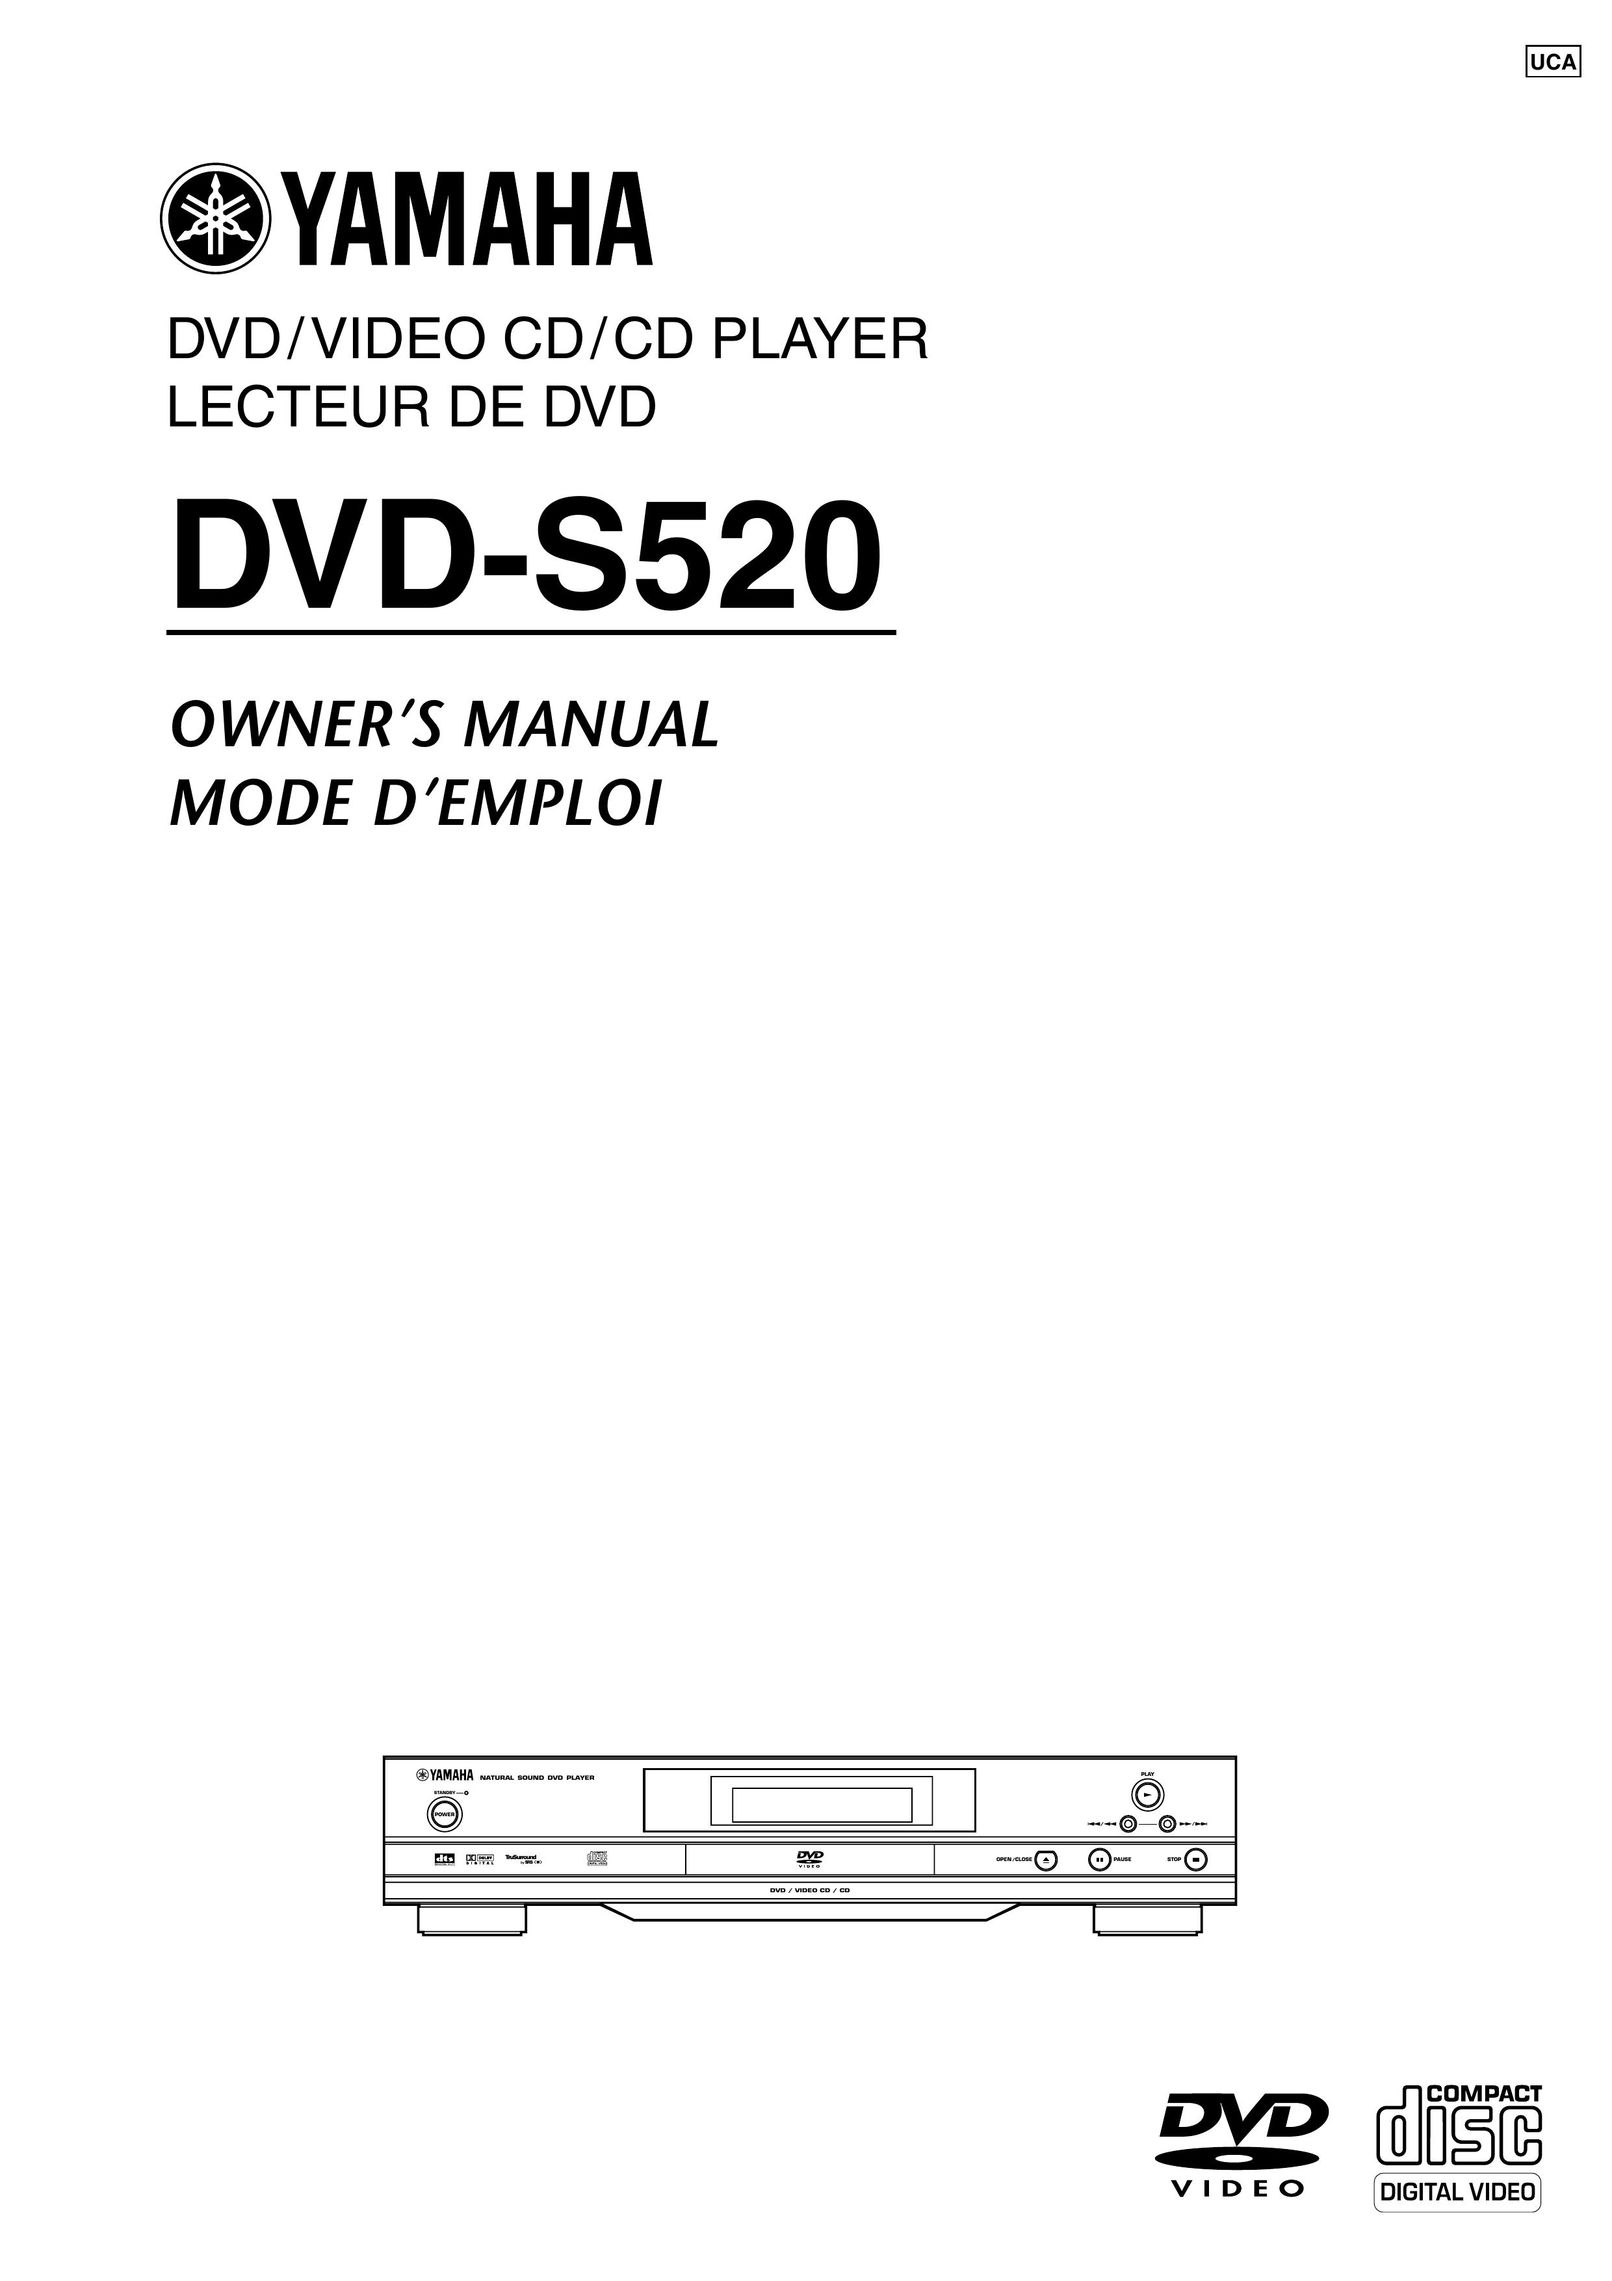 Yamaha DVD-S520 DVD Player User Manual